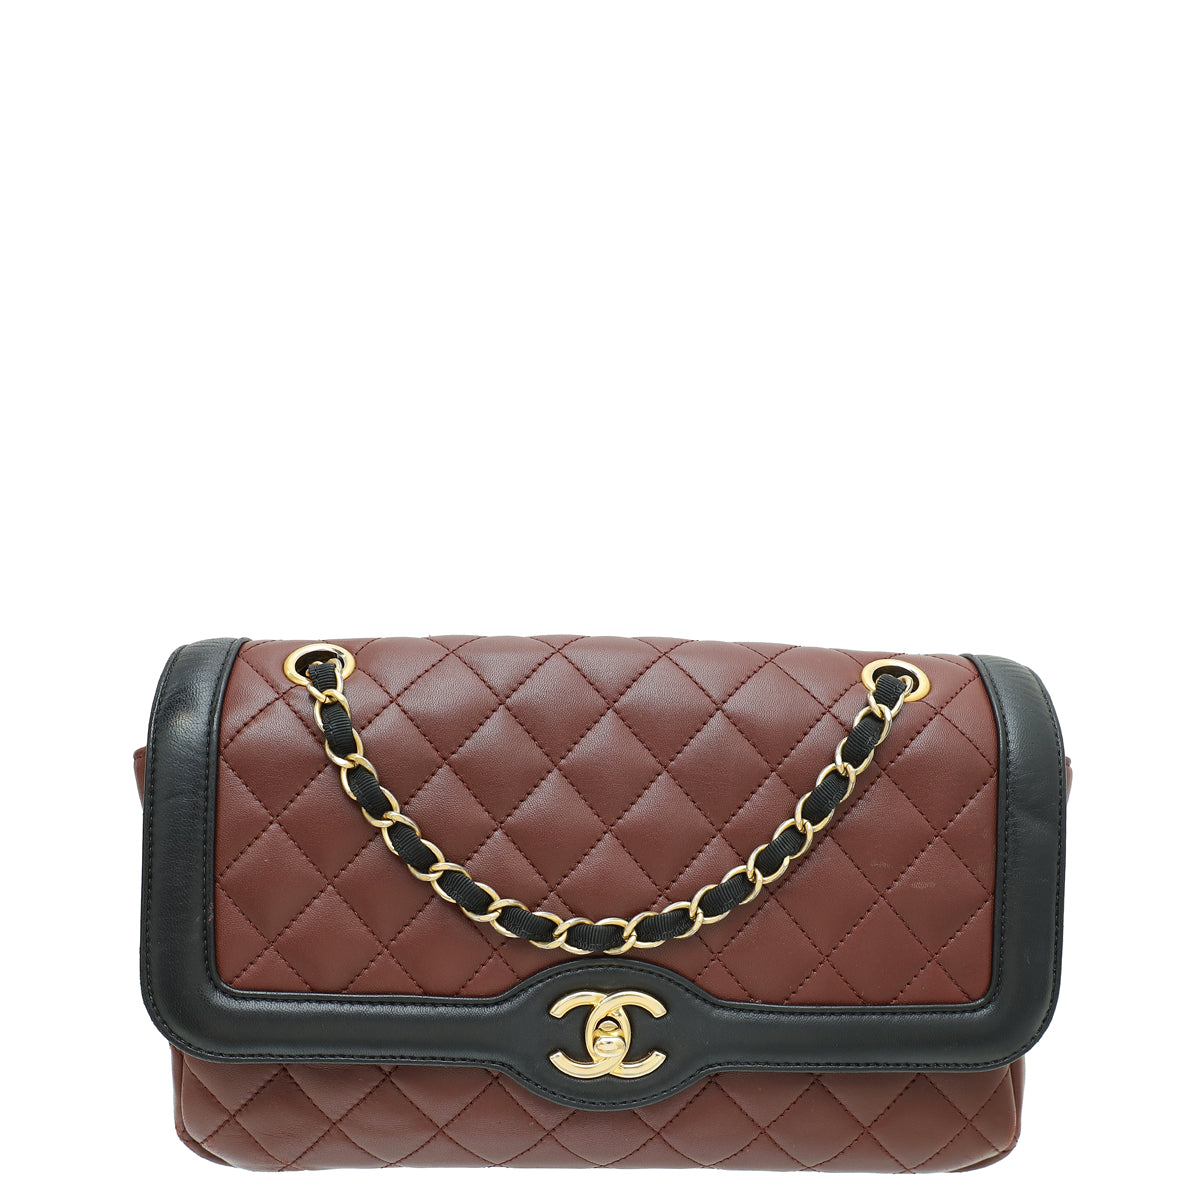 Chanel Bicolor CC Diana Flap Medium Bag